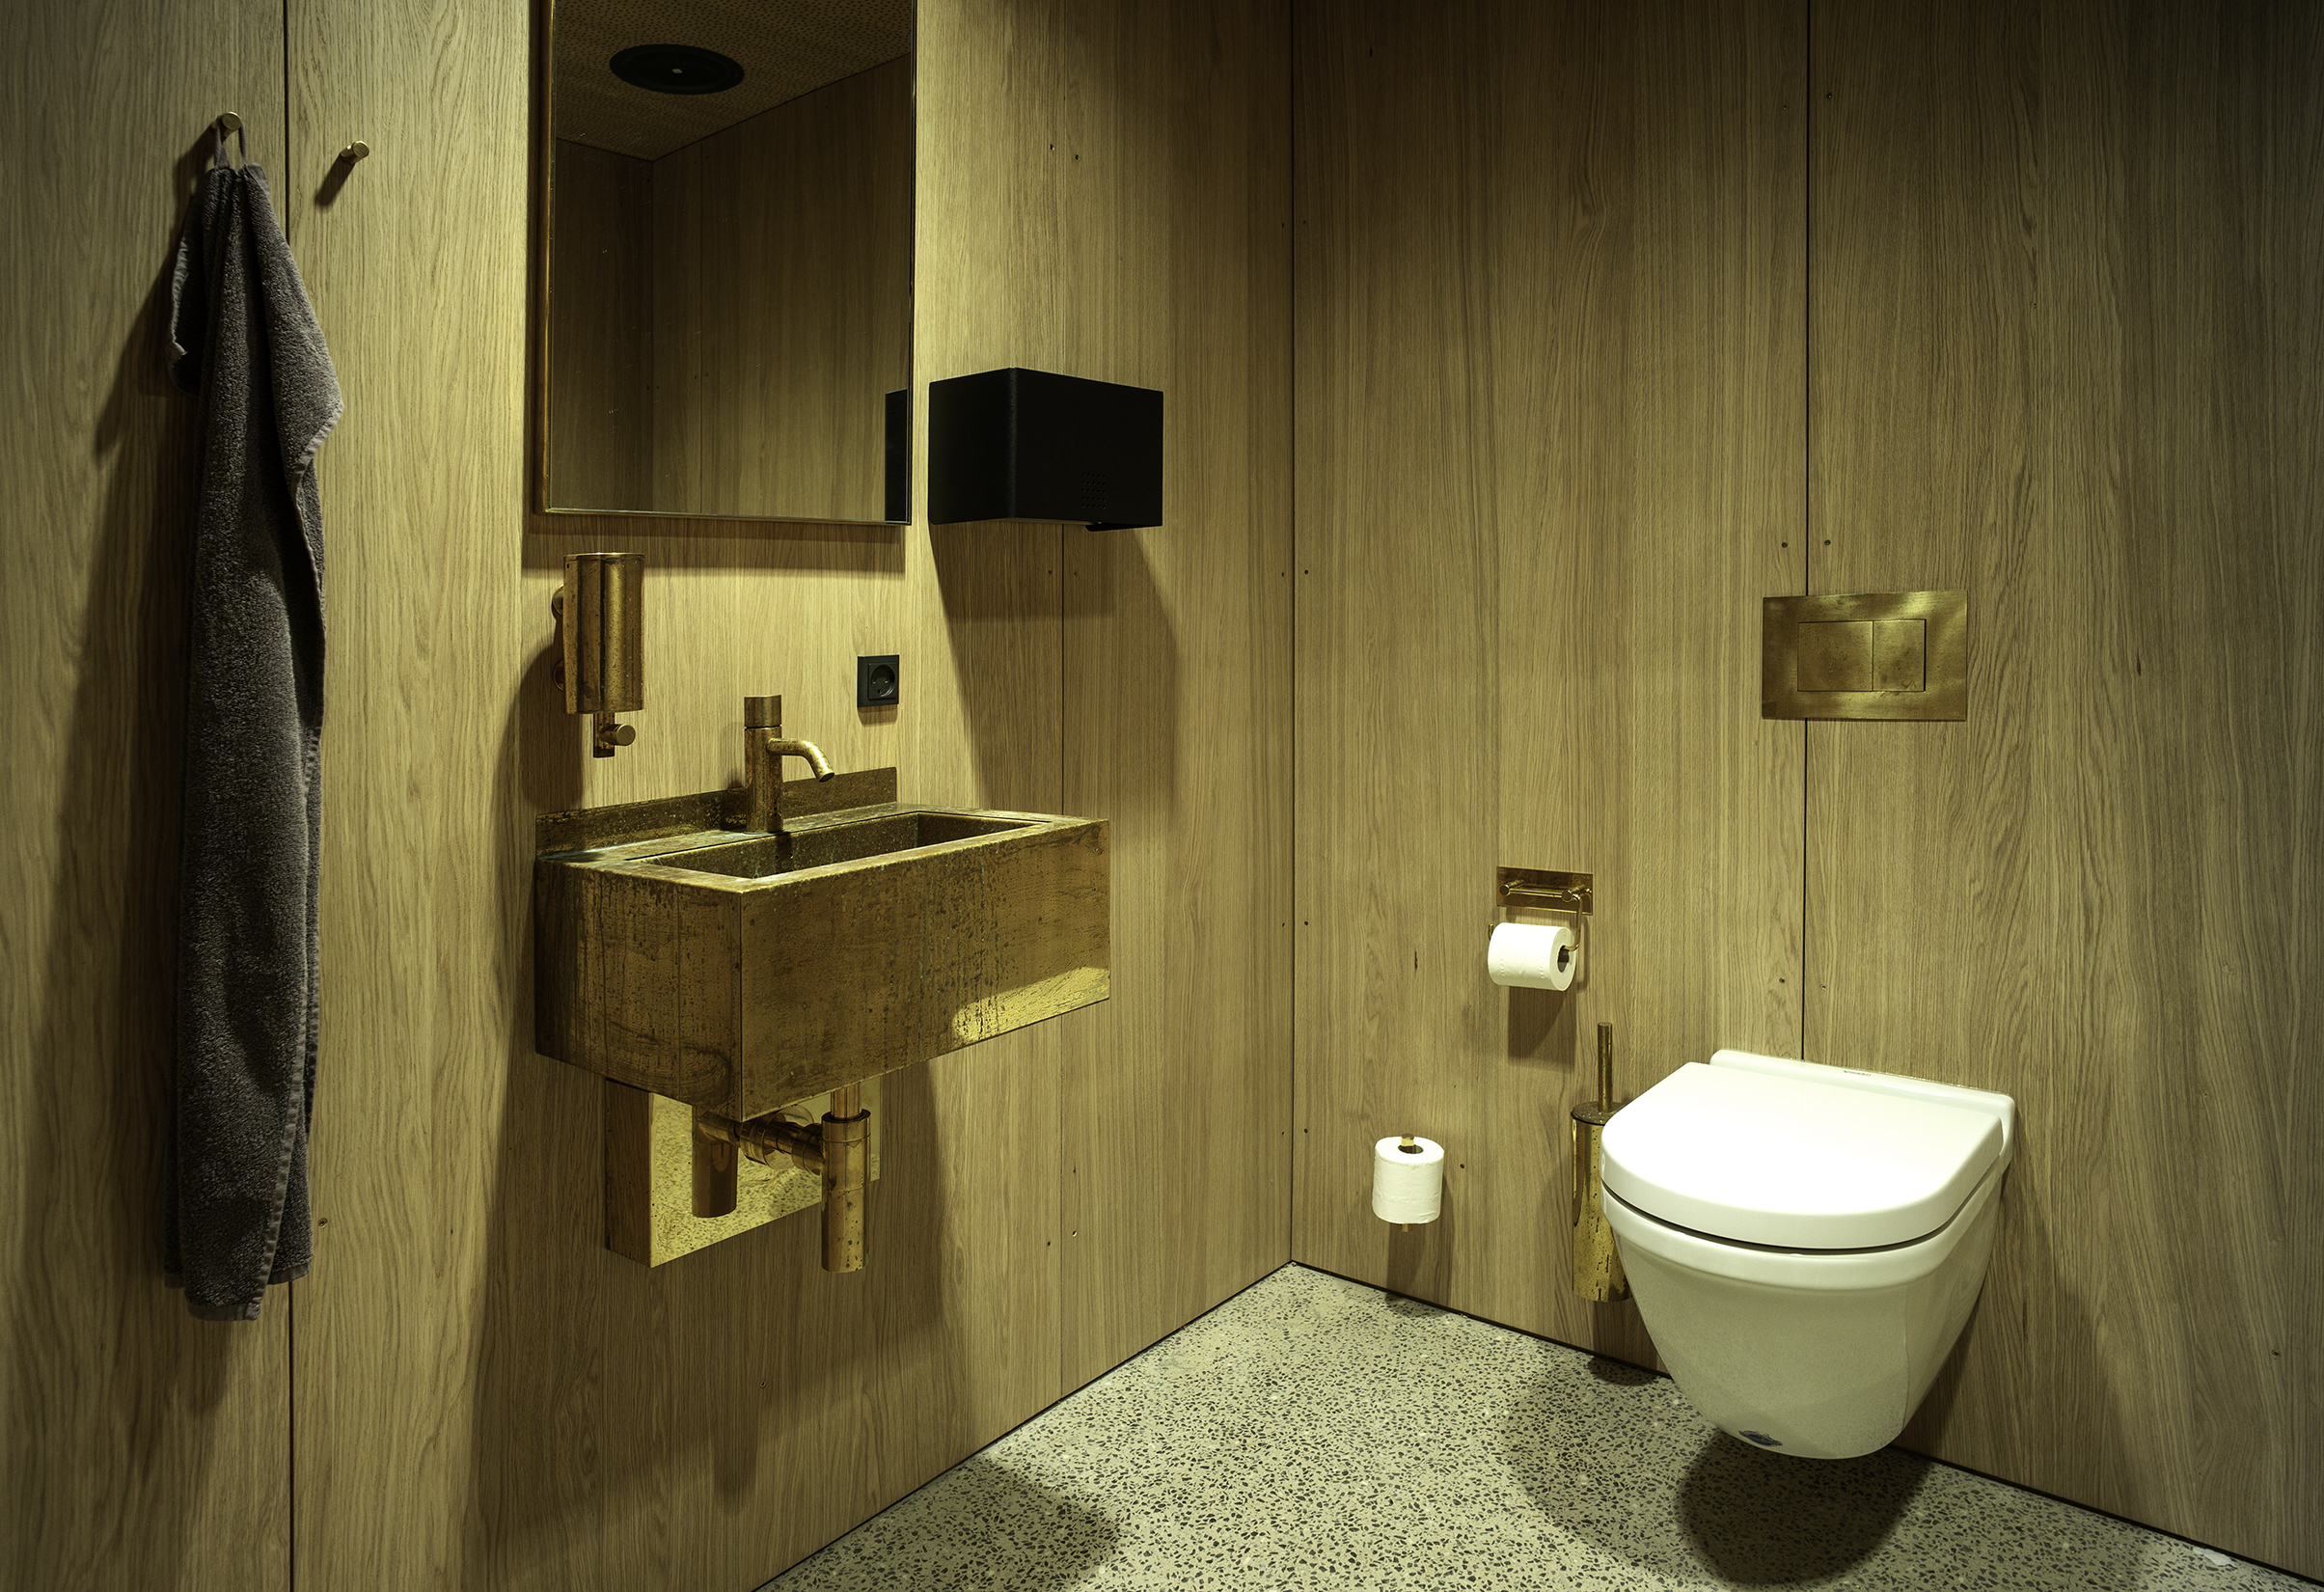 Kornets Hus - Toiletfaciliteter med træpaneler på væg og loft